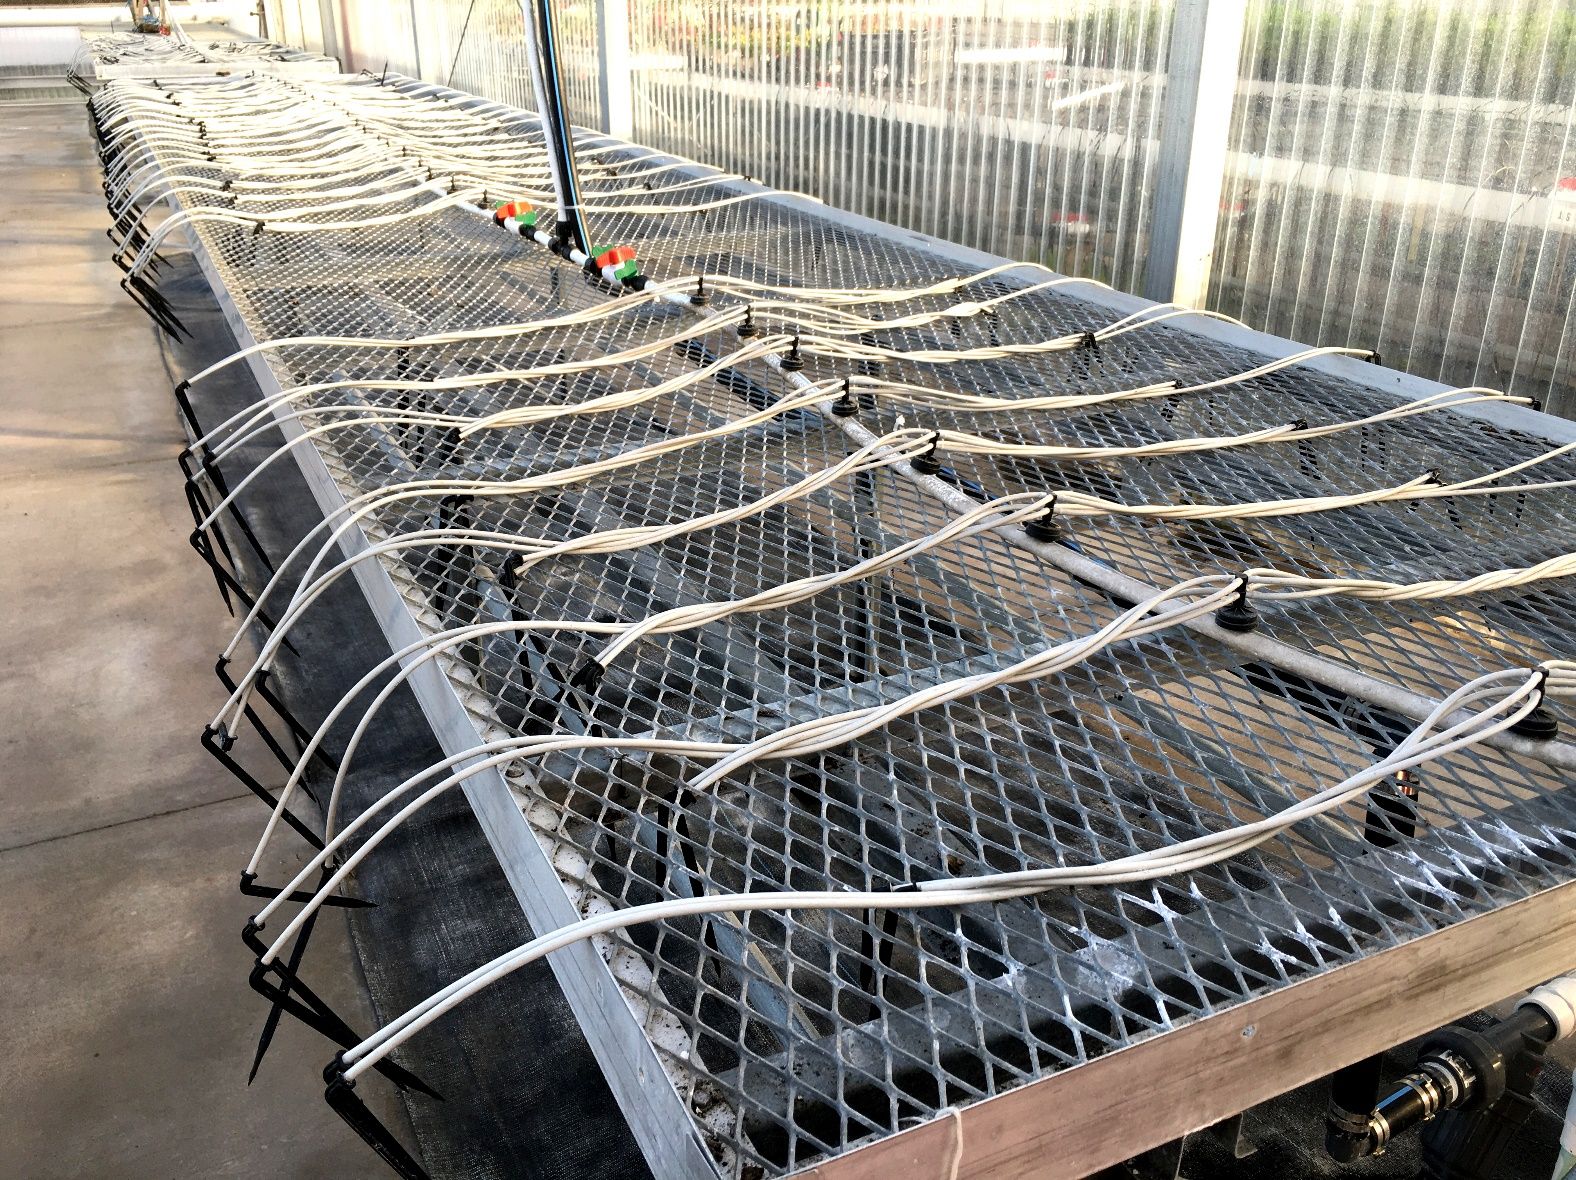 El sistema de riego por goteo utilizado para cultivar plántulas de lúpulo en UF/IFAS GCREC en Balm, FL. Se conectaron ocho goteros en ángulo a un emisor de compensación de presión de 2 galones por hora utilizando dos divisores de emisor de 4 terminales.